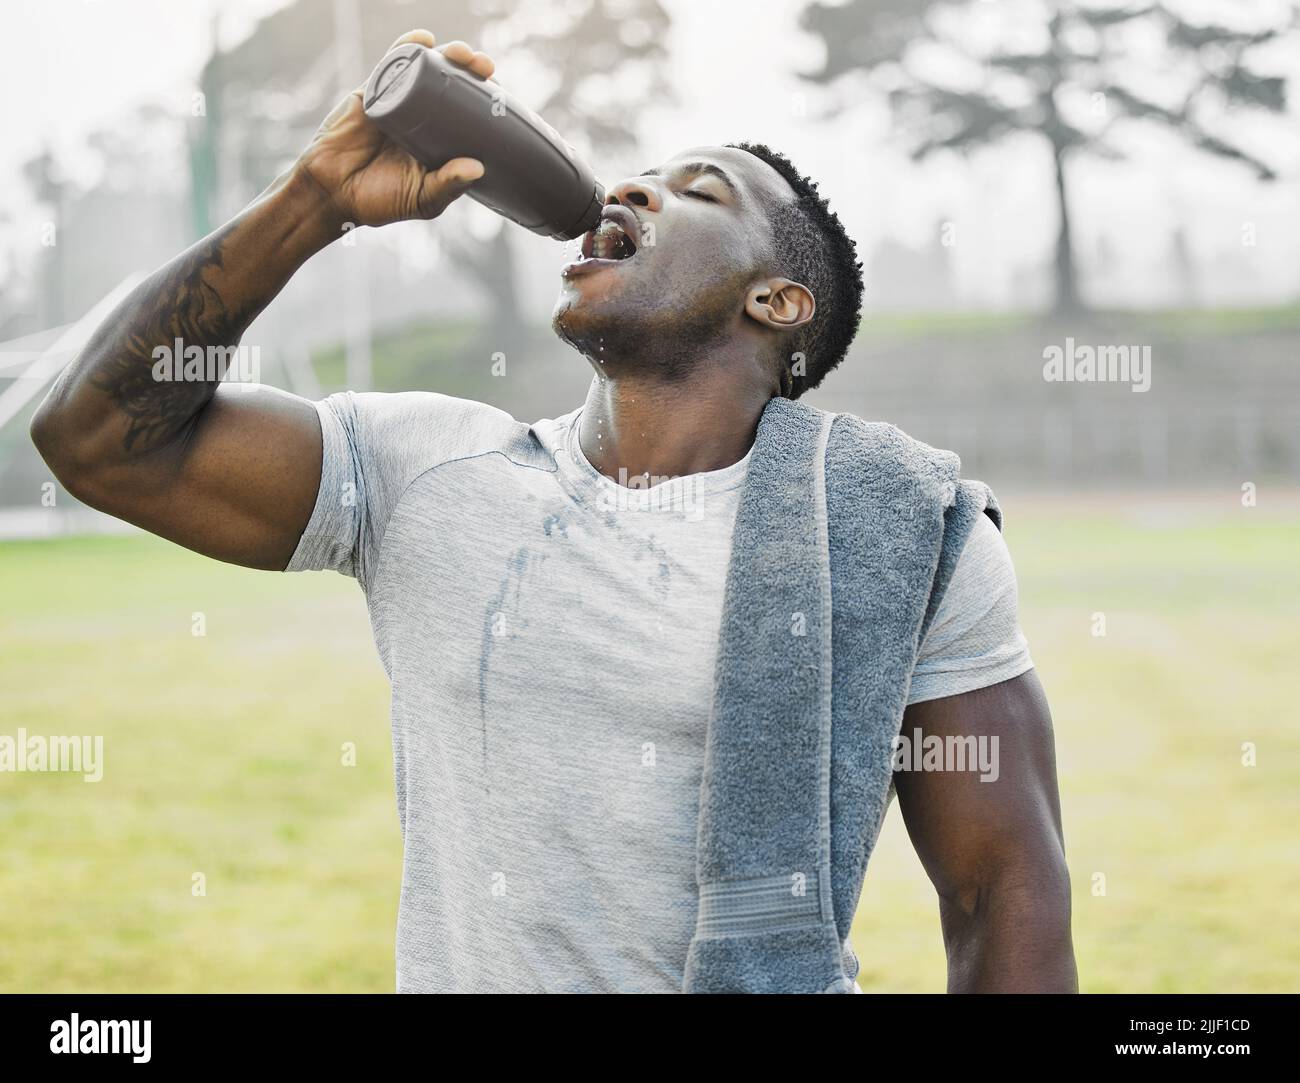 È il momento di rinfrescarsi. Un bel giovane atleta maschile beve acqua mentre si esercita all'esterno. Foto Stock